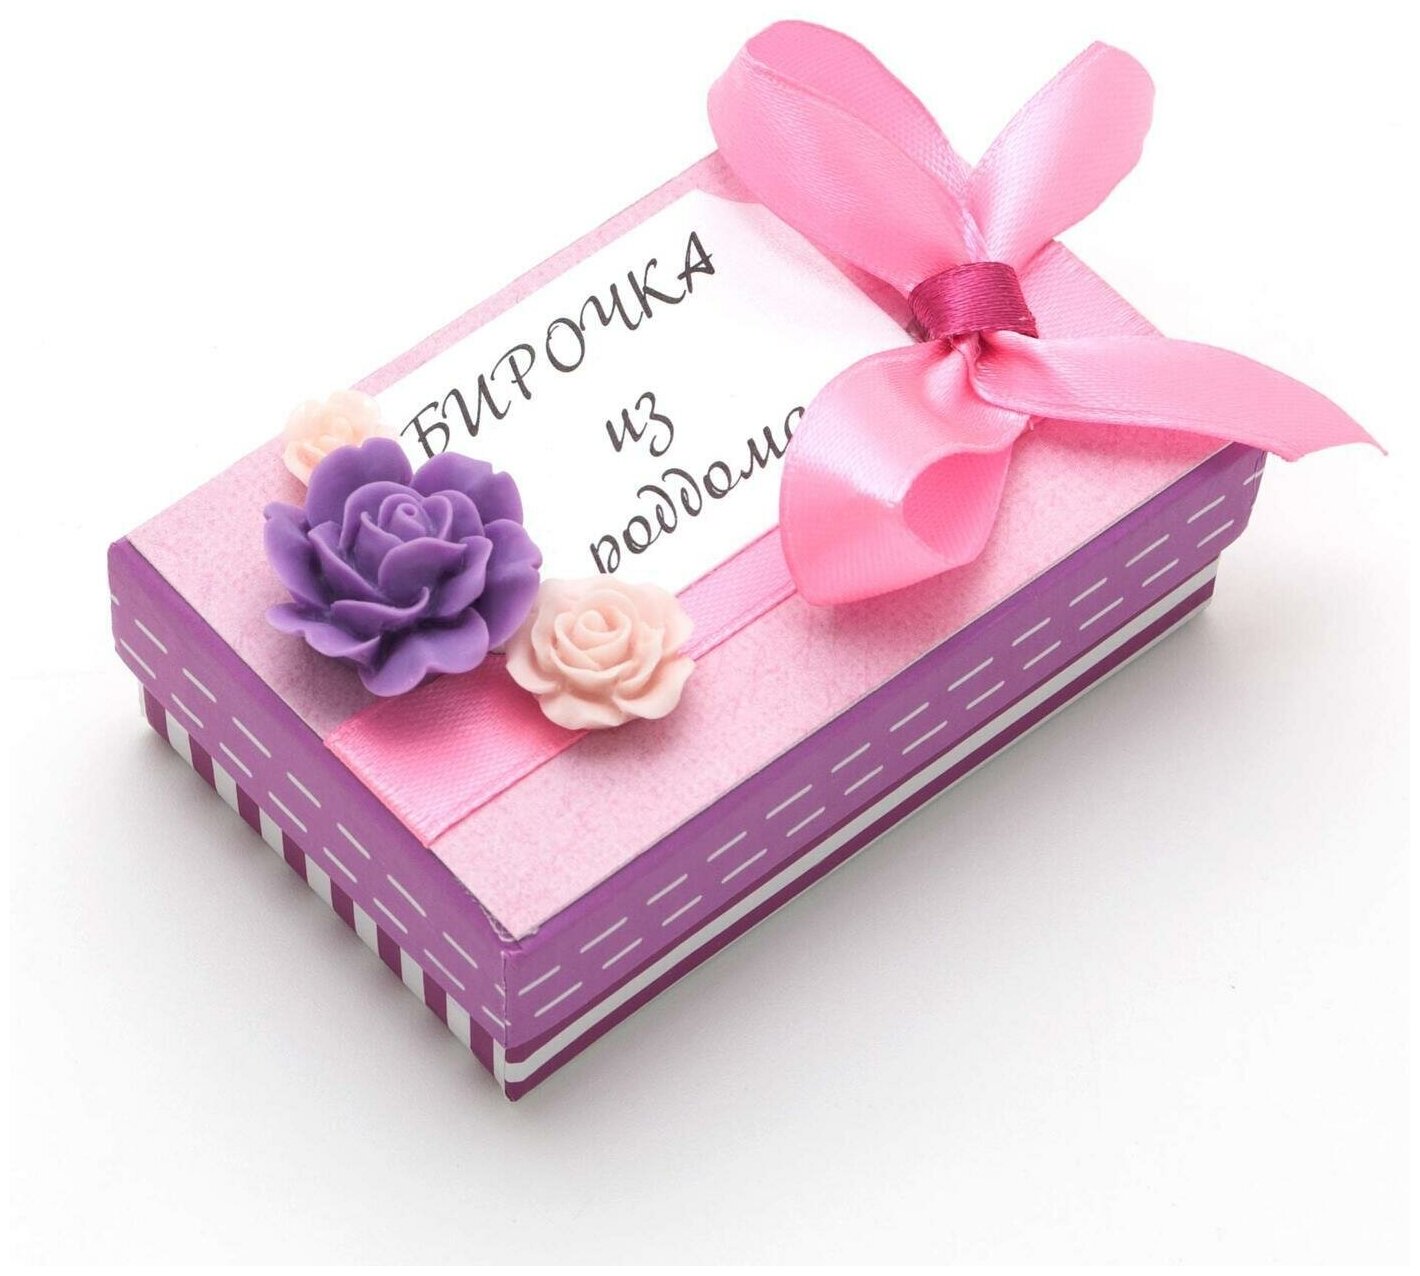 Коробочка для бирочки из роддома "Наше счастье" для новорожденной девочки